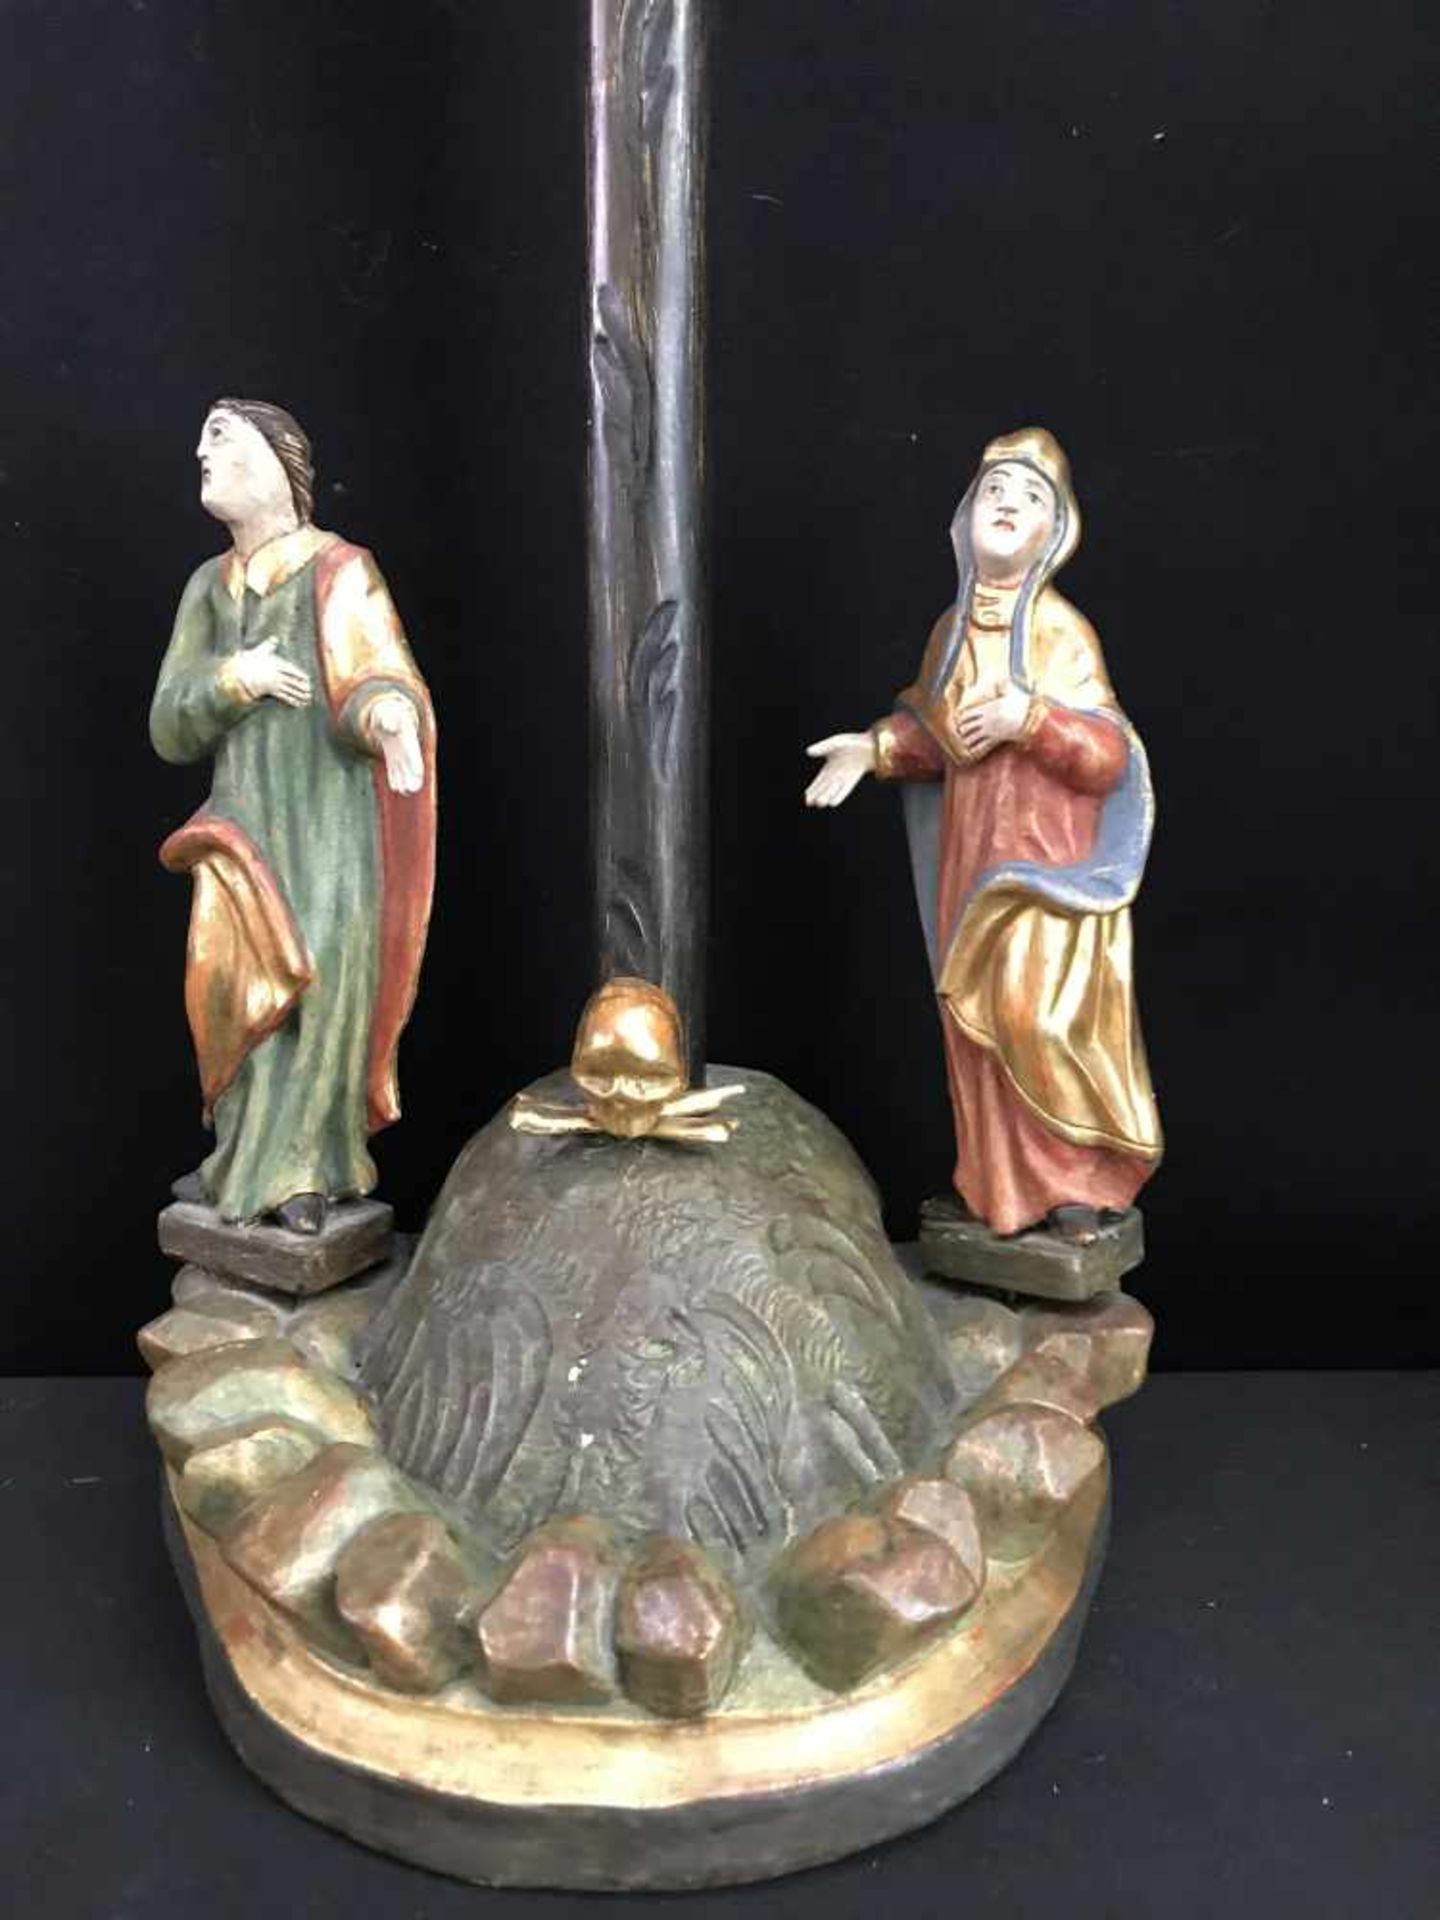 Süddeutsch, 19. Jh., Standkreuz bzw. Kruzifix mit den Assistenzfiguren Maria und Johannes der - Image 2 of 3